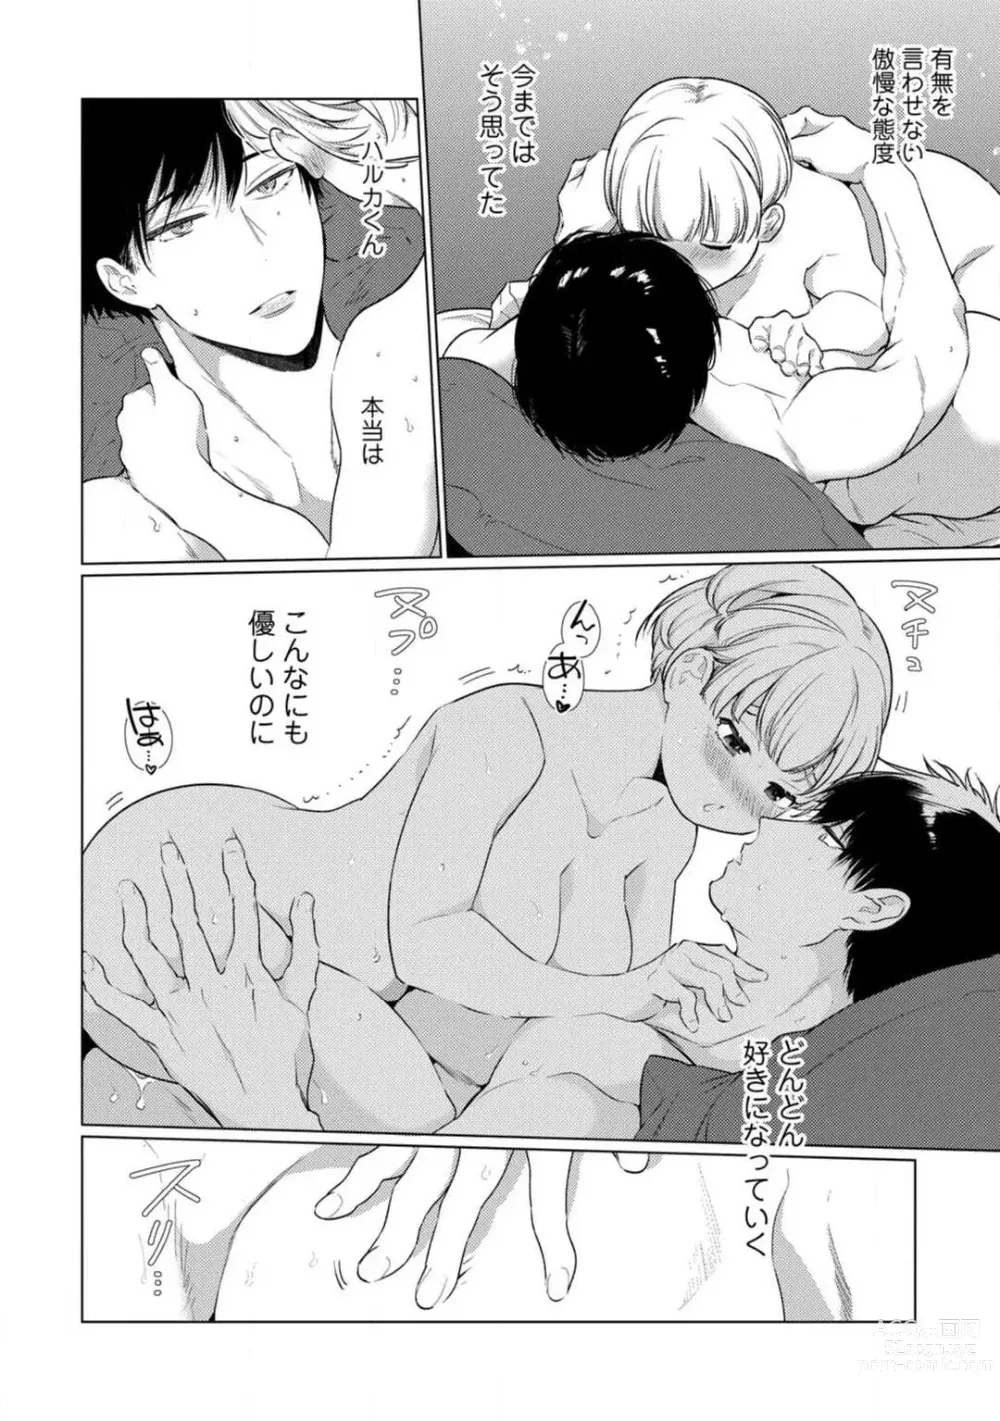 Page 326 of manga Kuroneko Osananajimi ga Nigashite Kurenai. 1-10